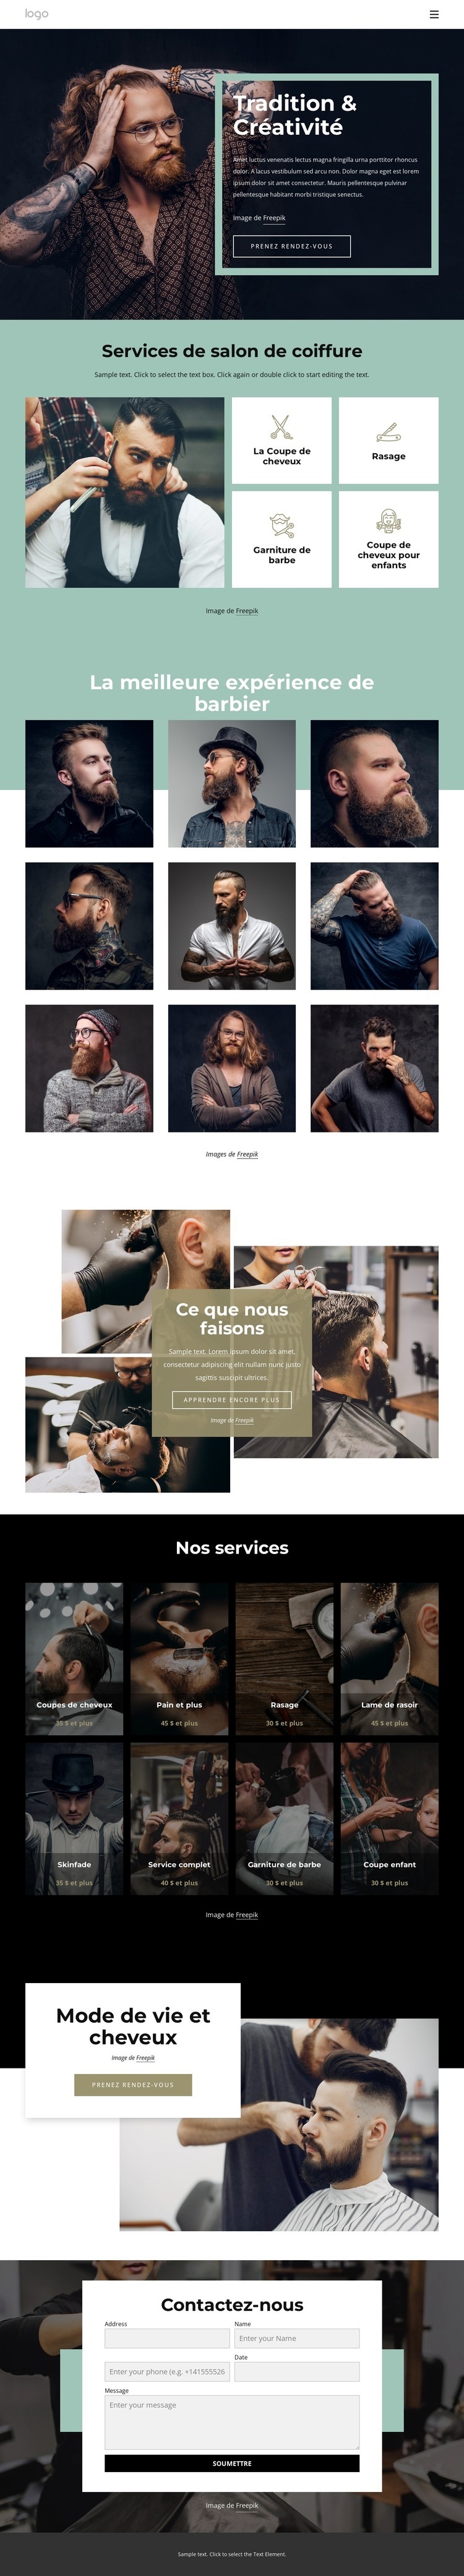 Salon de coiffure public Modèle